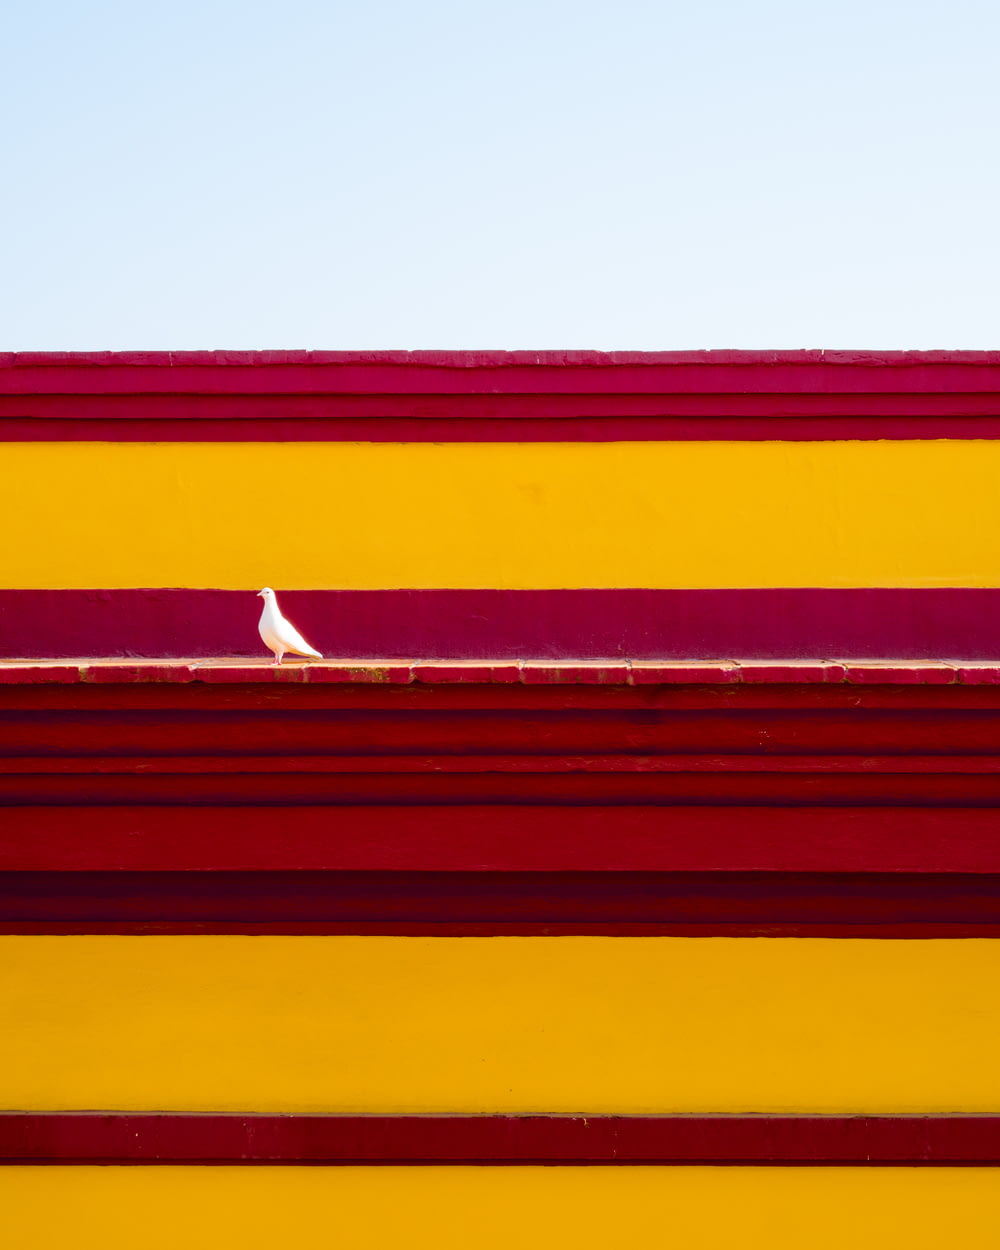 赤と黄色の建物の上に座っている白い鳥